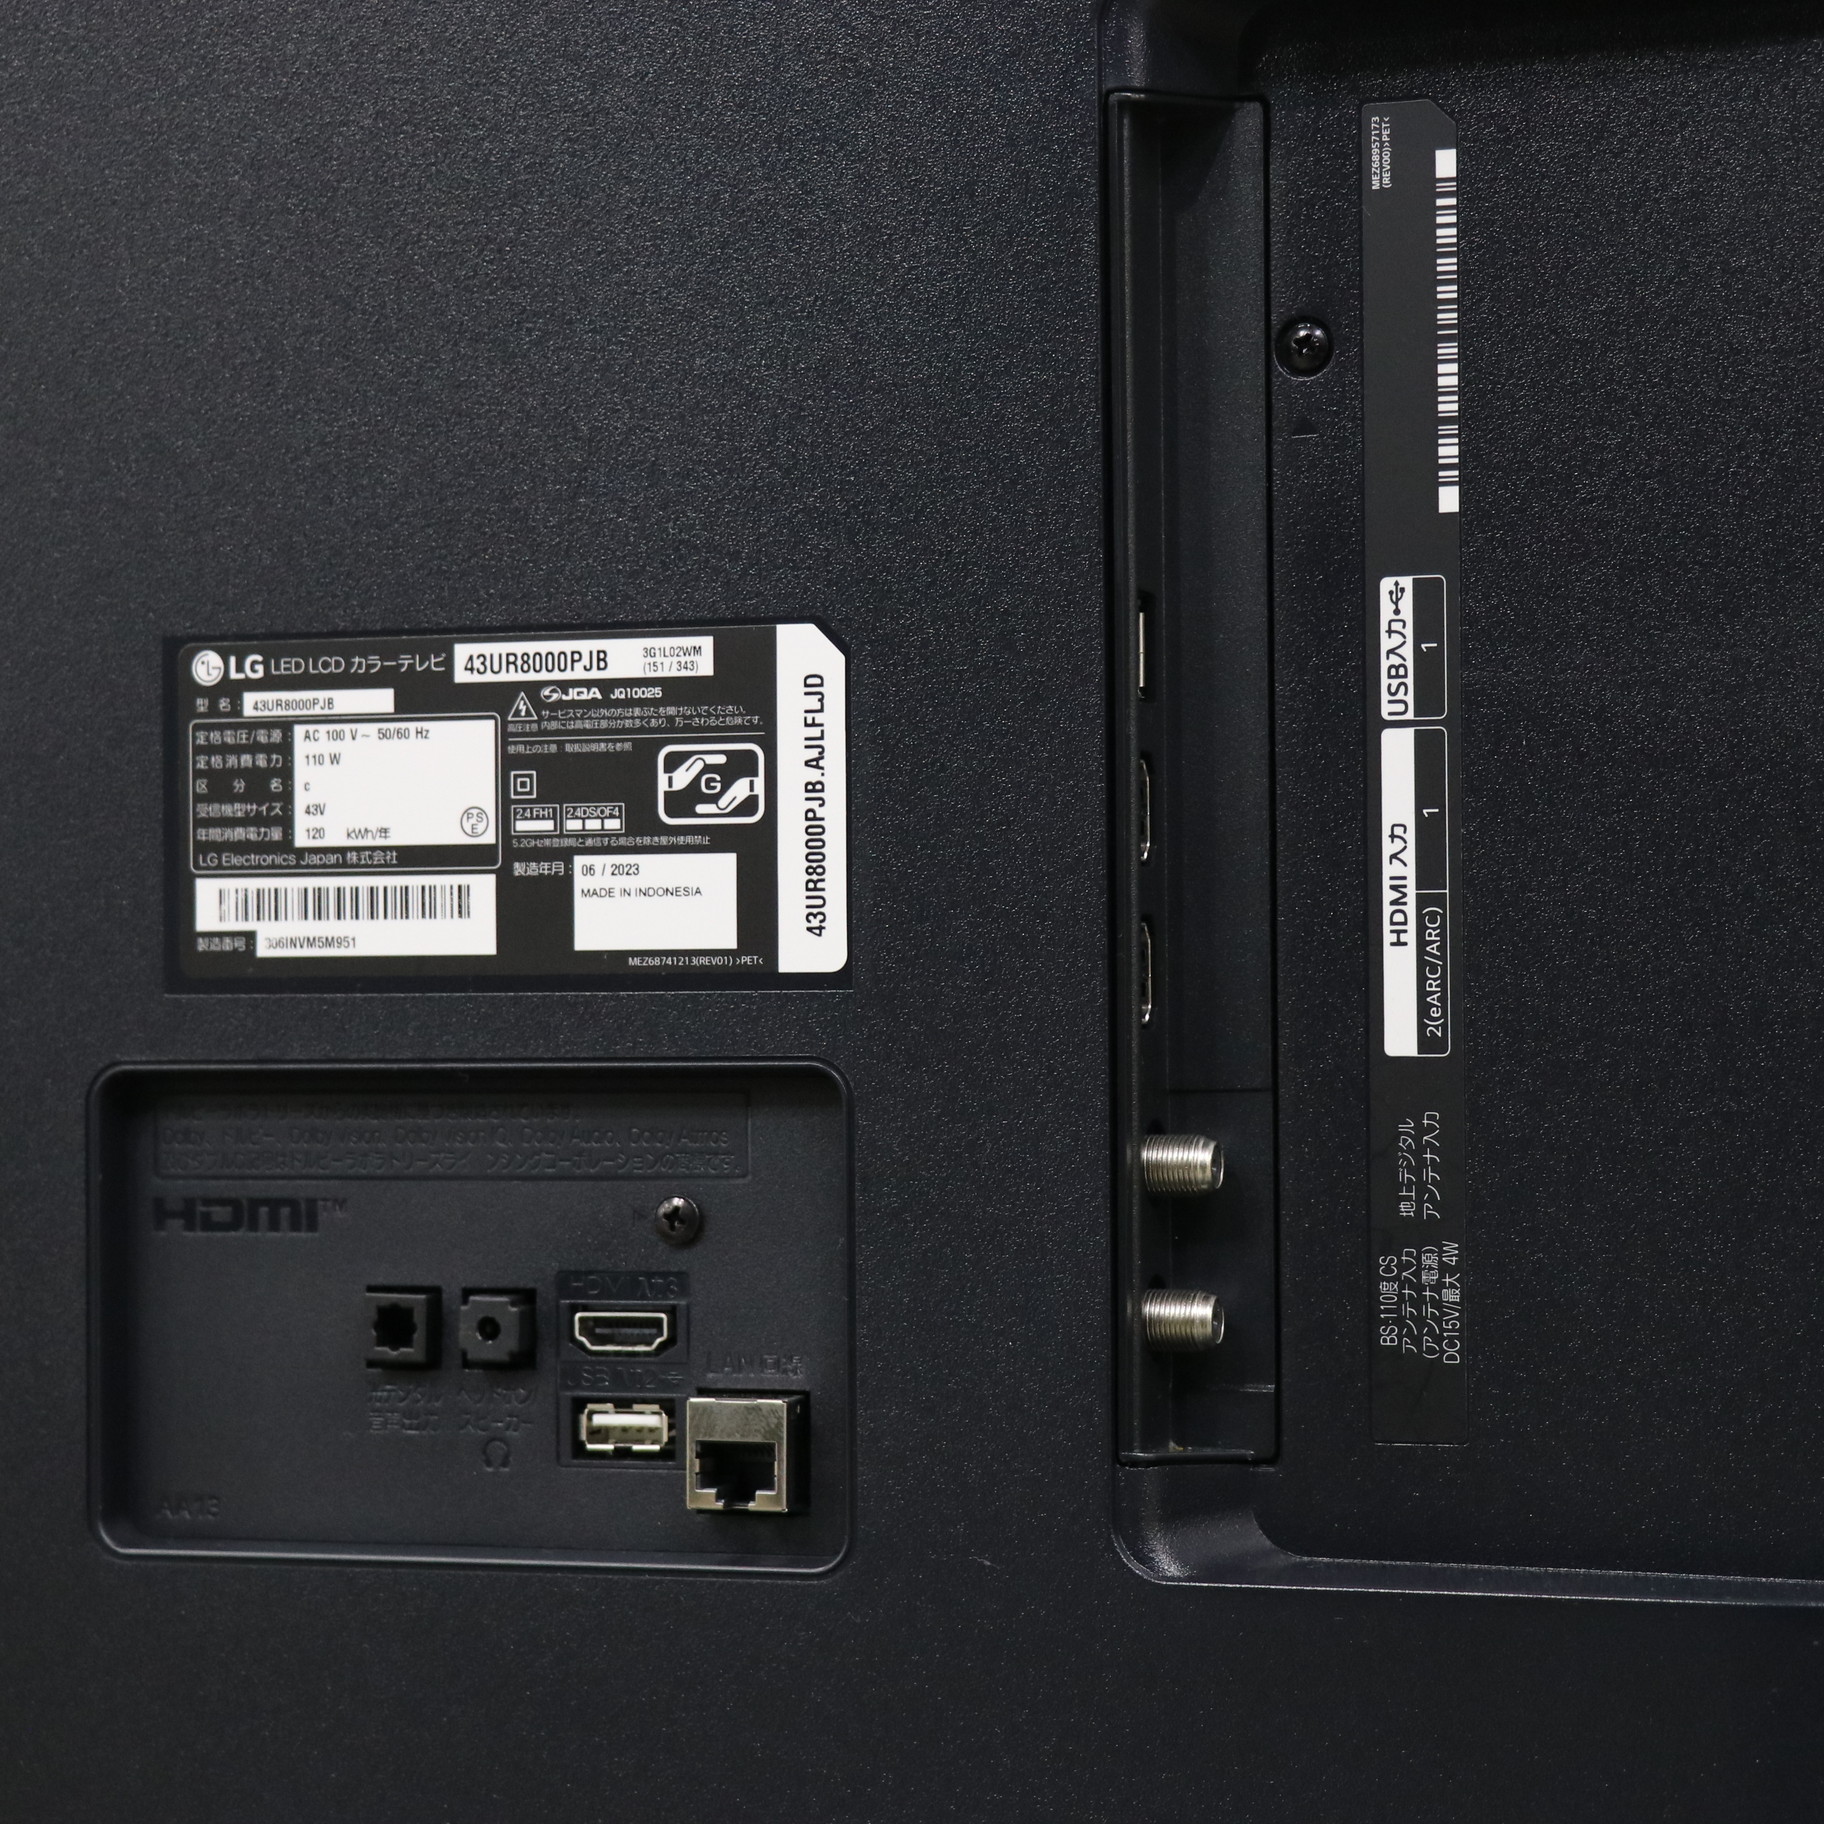 LGエレクトロニクス(LG) 43UR8000PJB 4K液晶テレビ 4Kチューナー内蔵 43V型